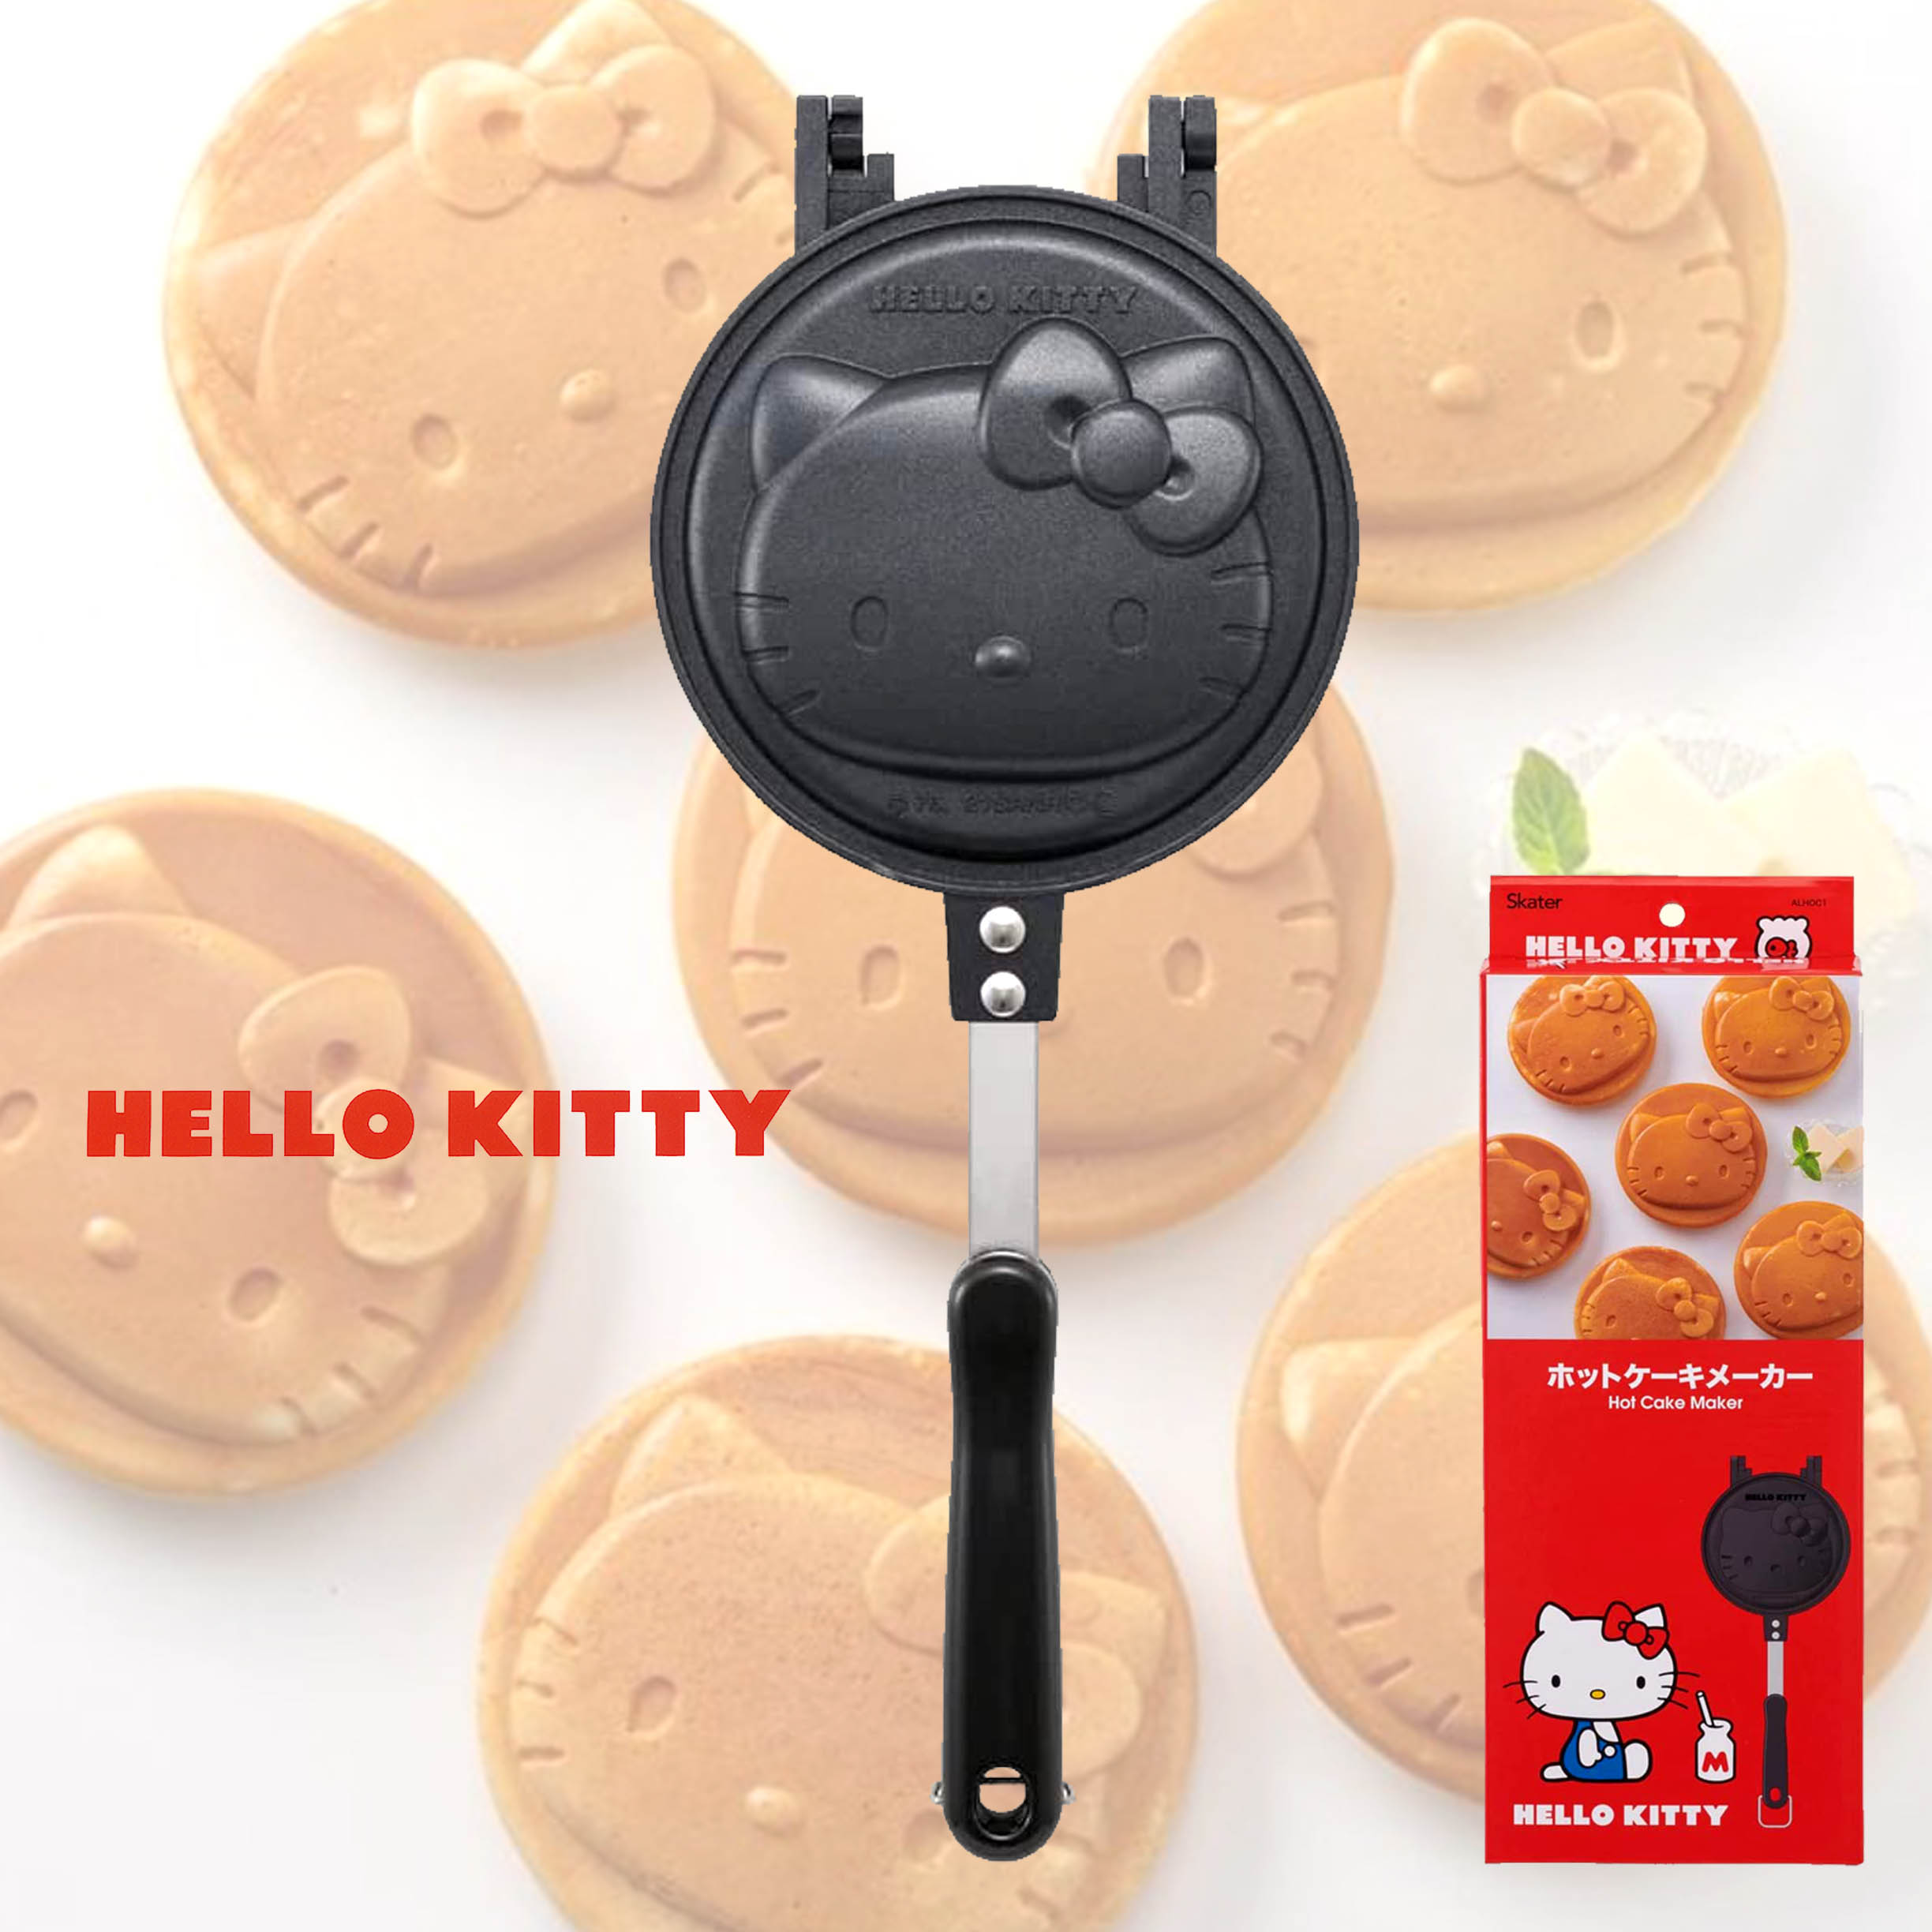 鋁合金鬆餅烤盤-凱蒂貓 HELLO KITTY SKATER 三麗鷗 Sanrio 日本進口正版授權